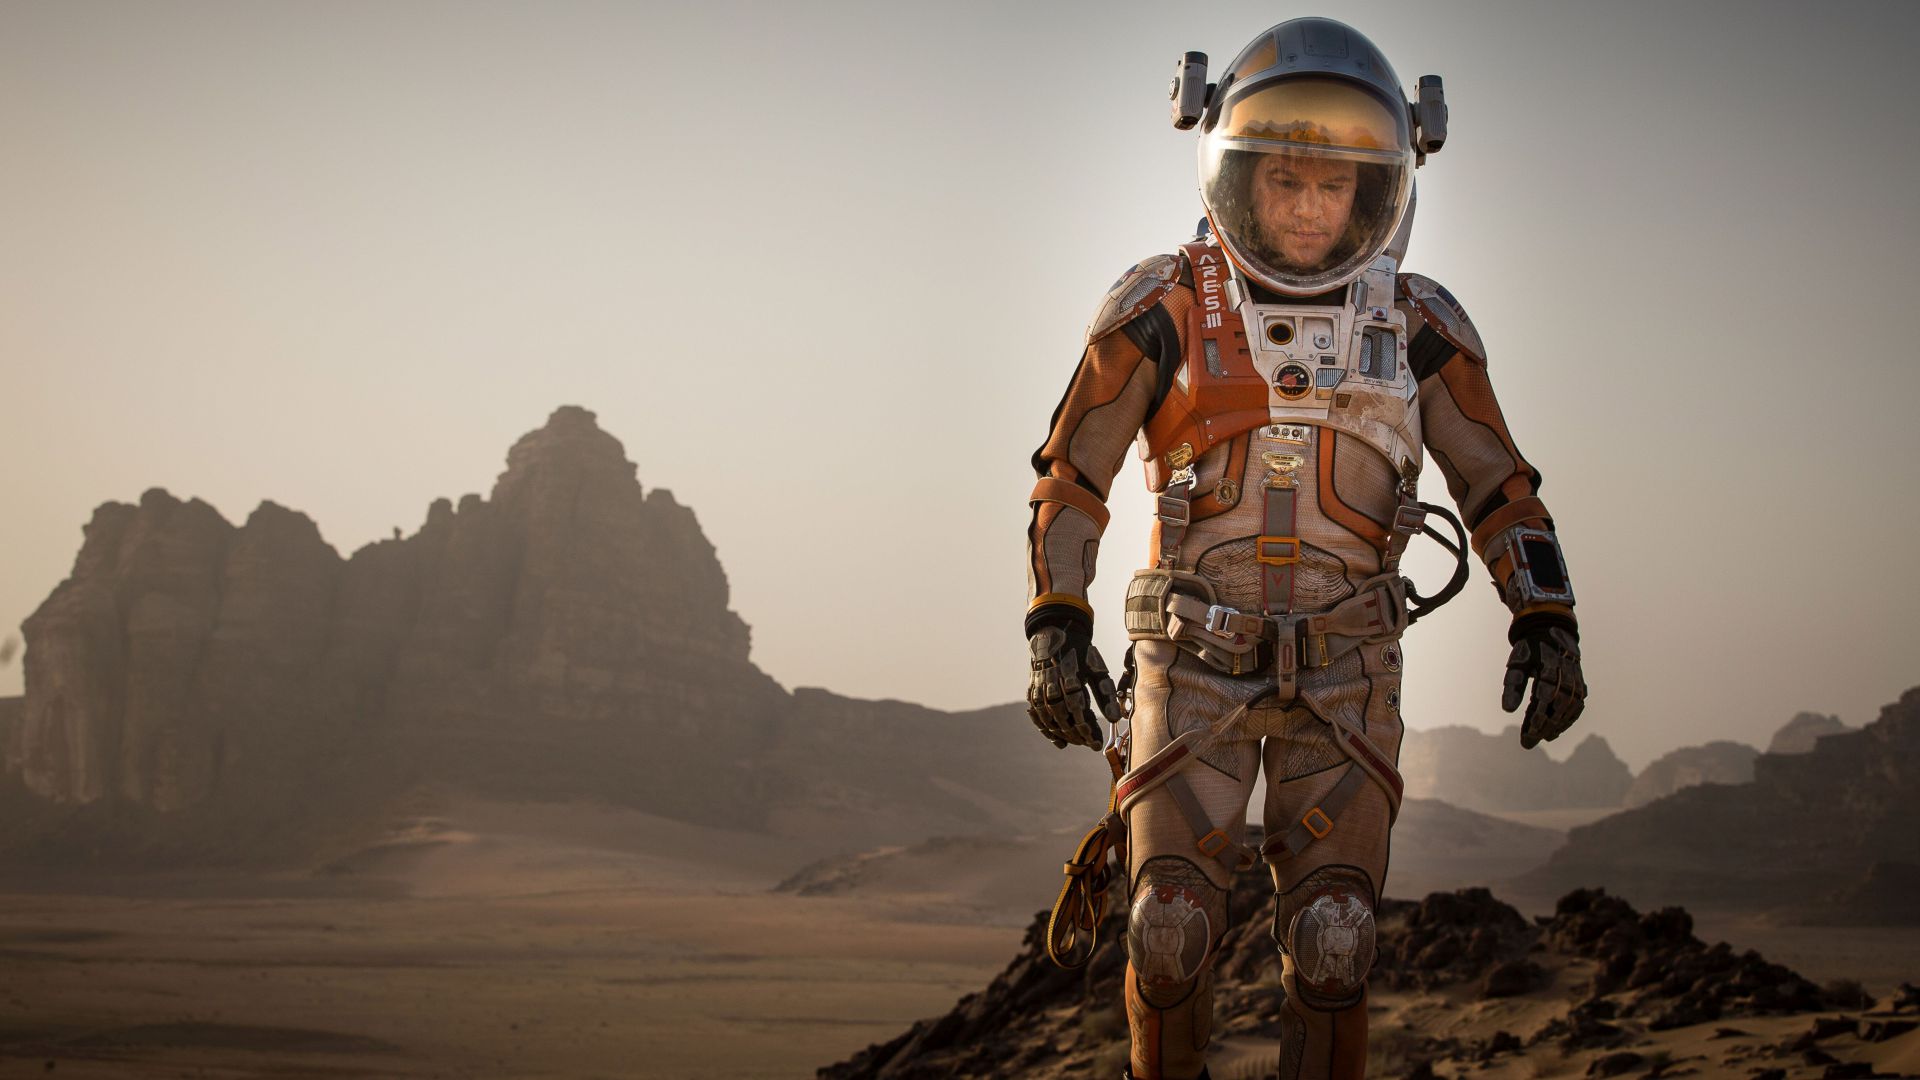 Марсианин, Лучшие фильмы 2015, кино, Мэтт Дэймон, The Martian, Best Movies of 2015, movie, Matt Damon (horizontal)